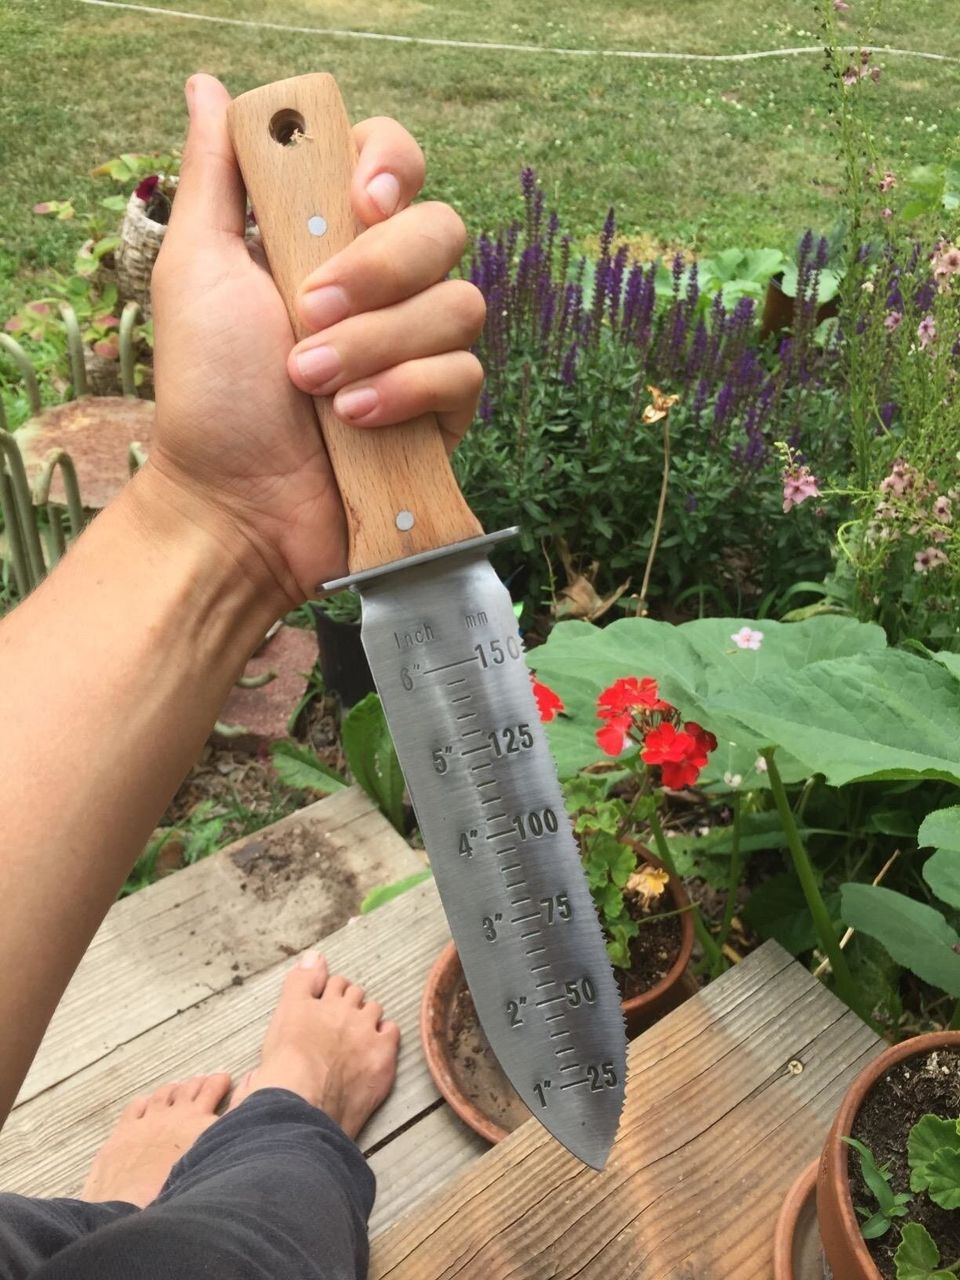 A hori hori garden knife